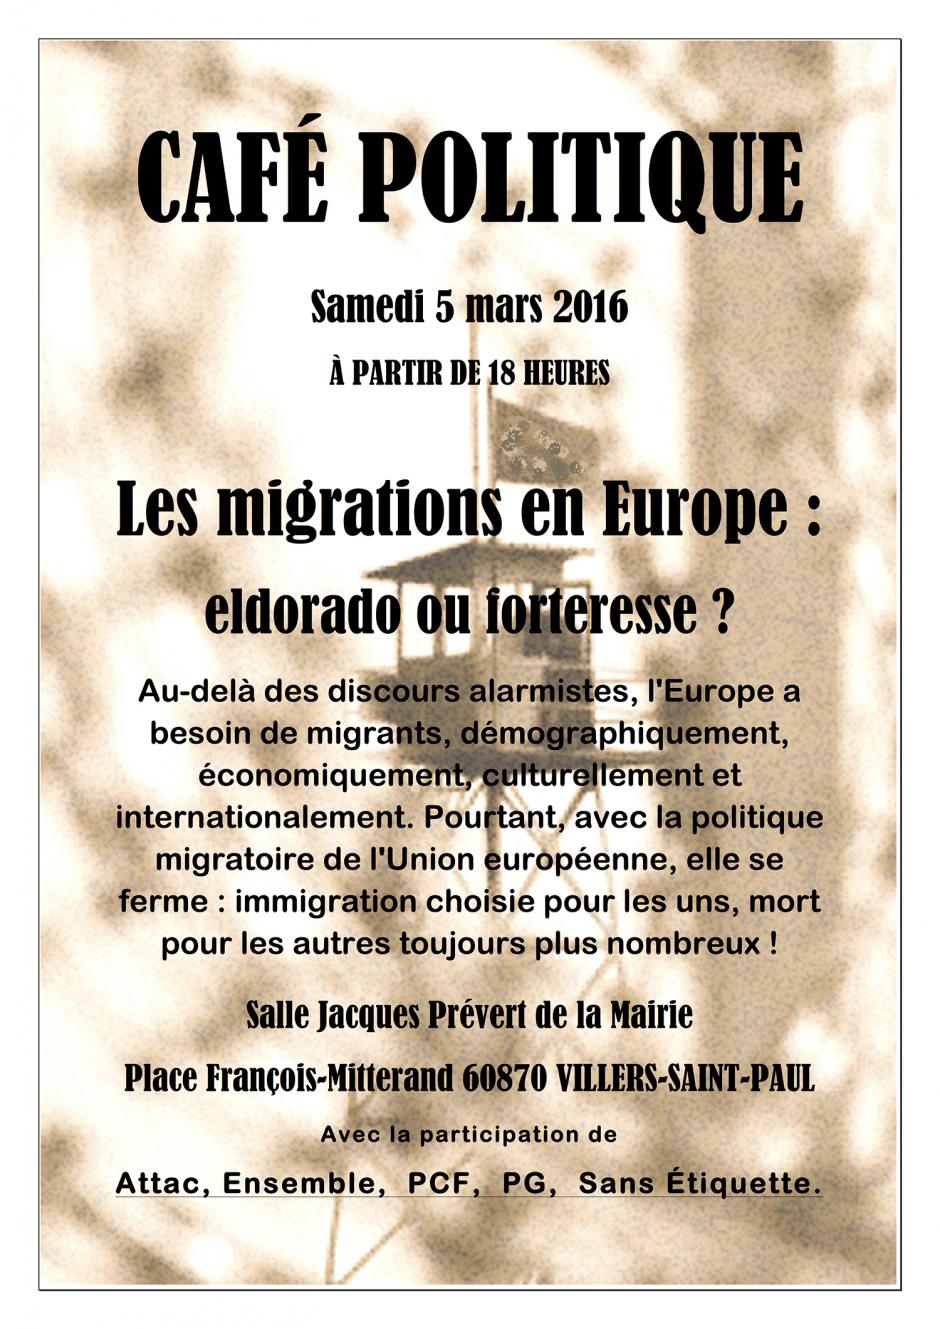 5 mars, Villers-Saint-Paul - Café politique « Les migrations en Europe : Eldorado ou forteresse ? »